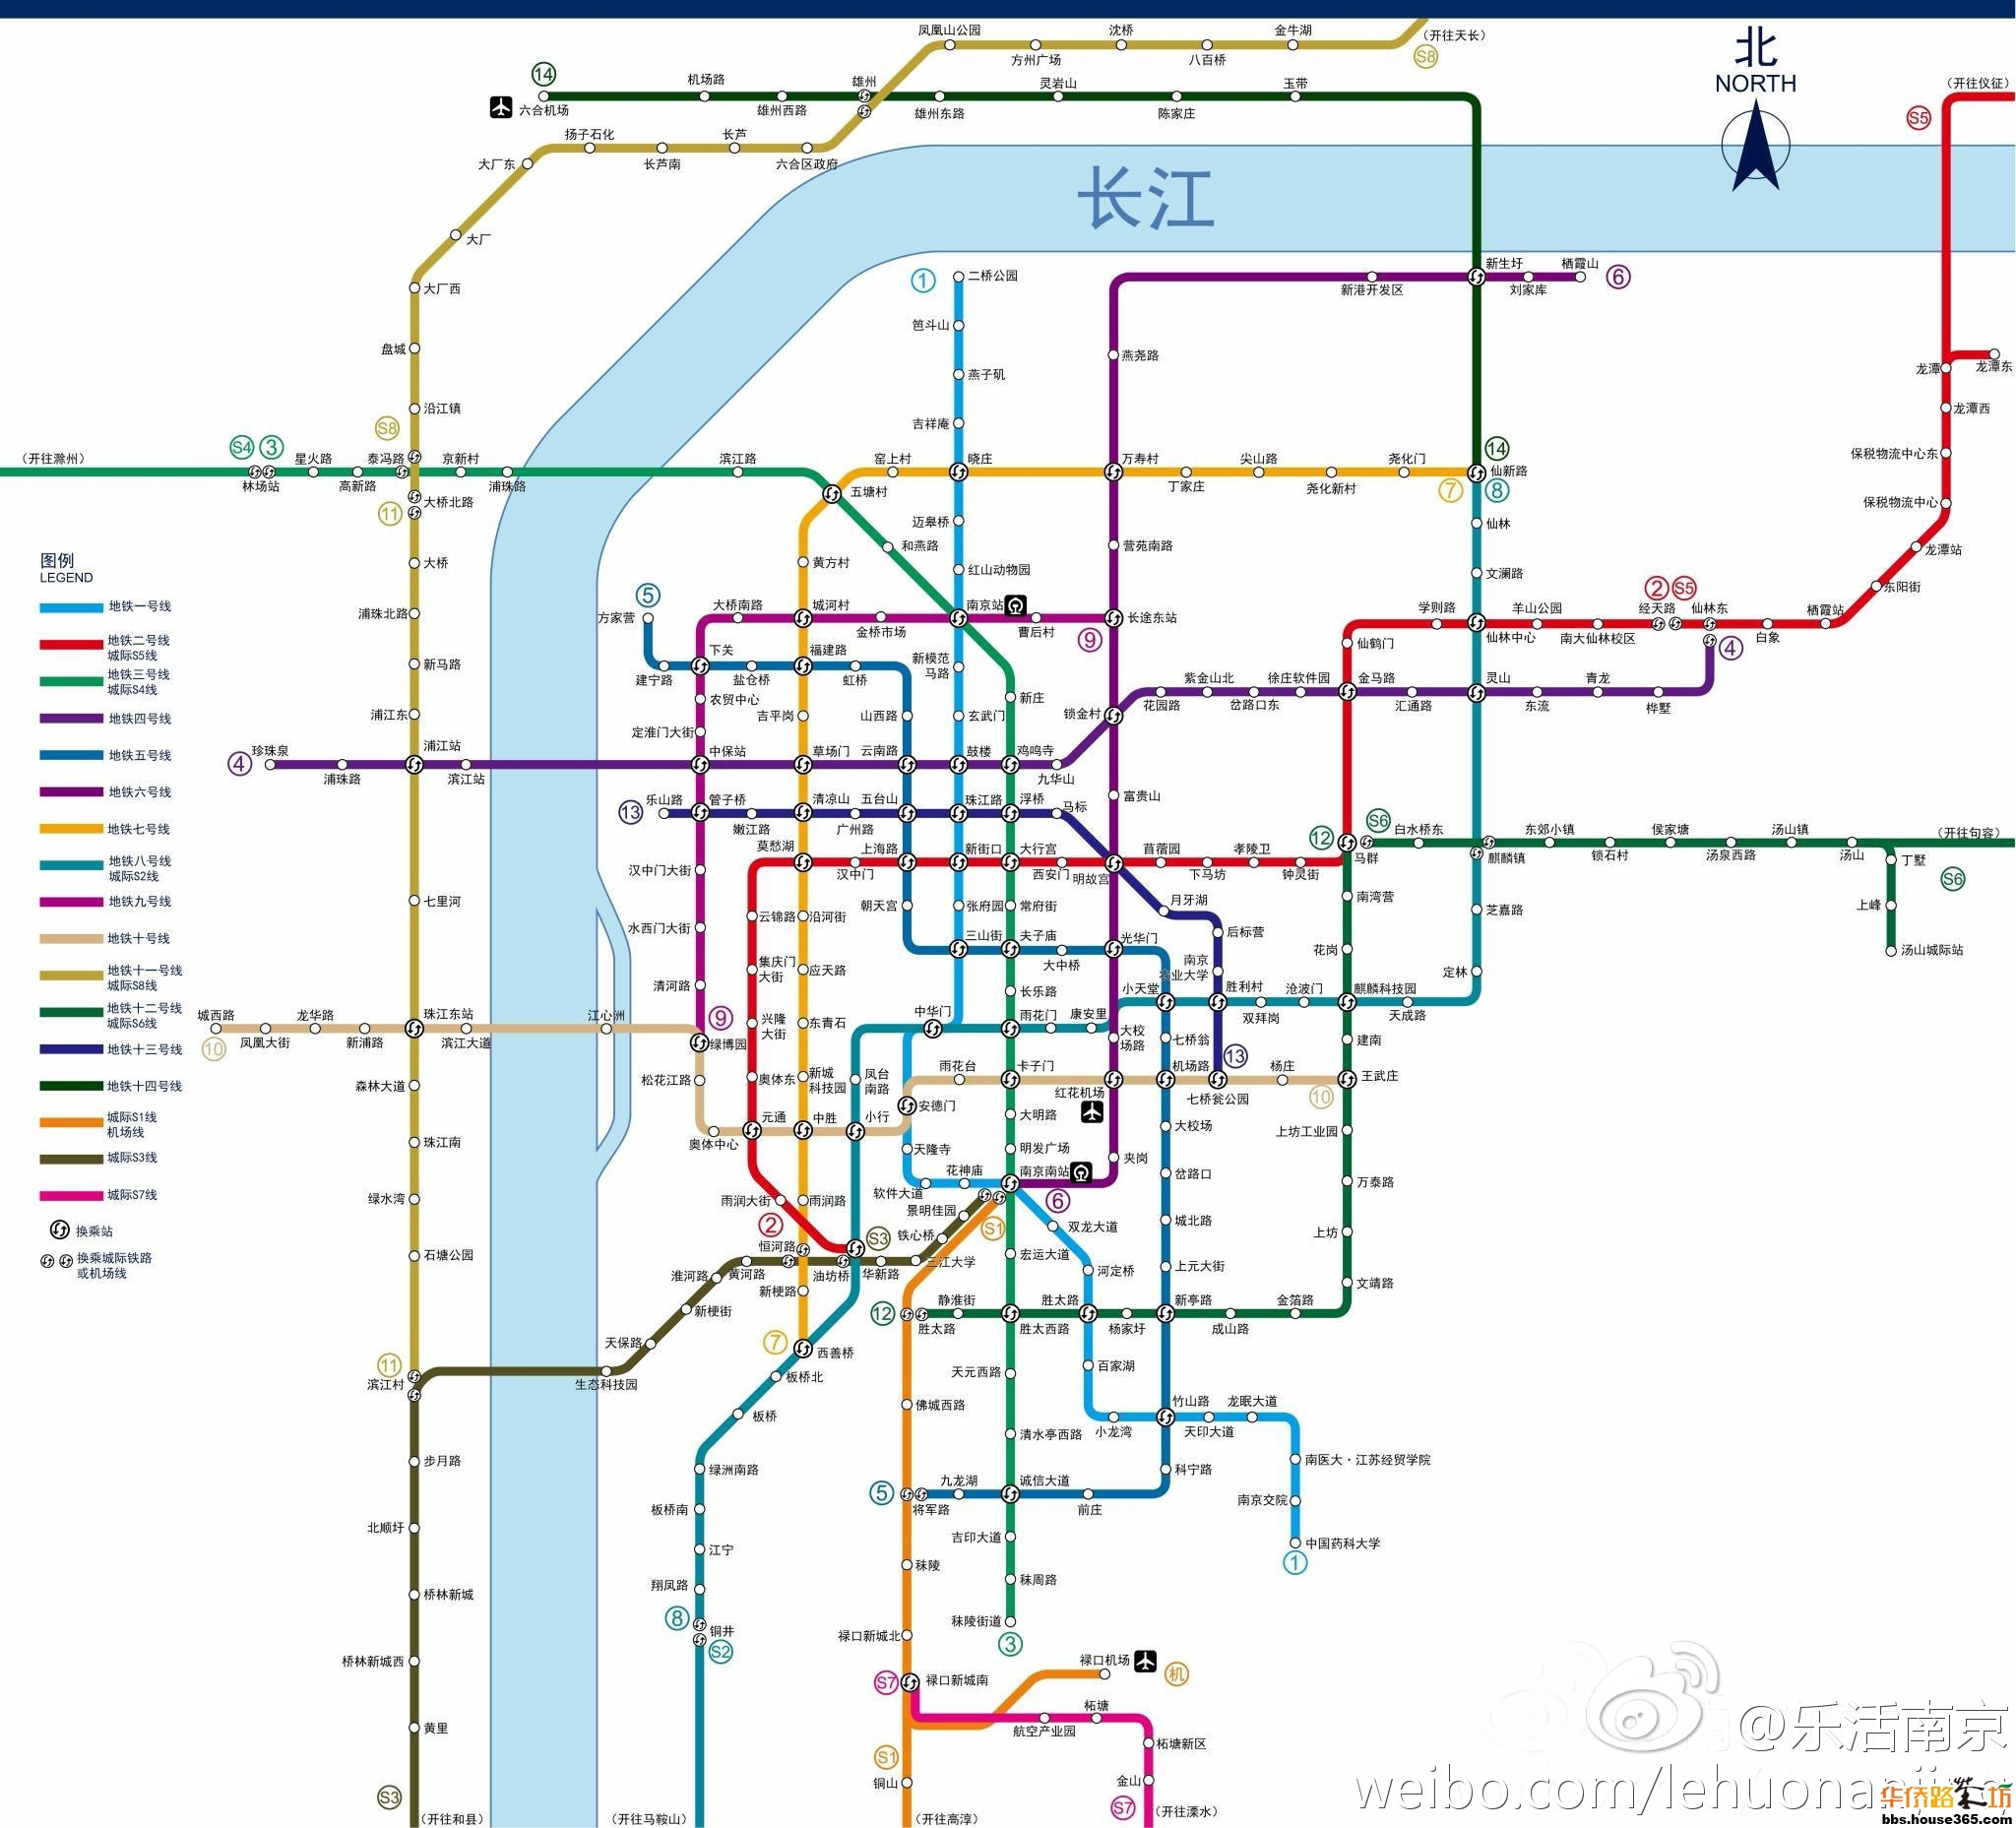 南京地铁远期线网规划图2035 及各条线路建设规划情况介绍 v1.8 - 知乎